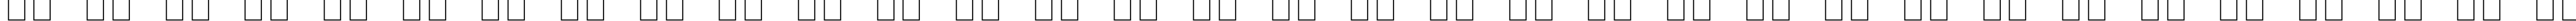 Пример написания русского алфавита шрифтом Lucida Bright Math Symbol